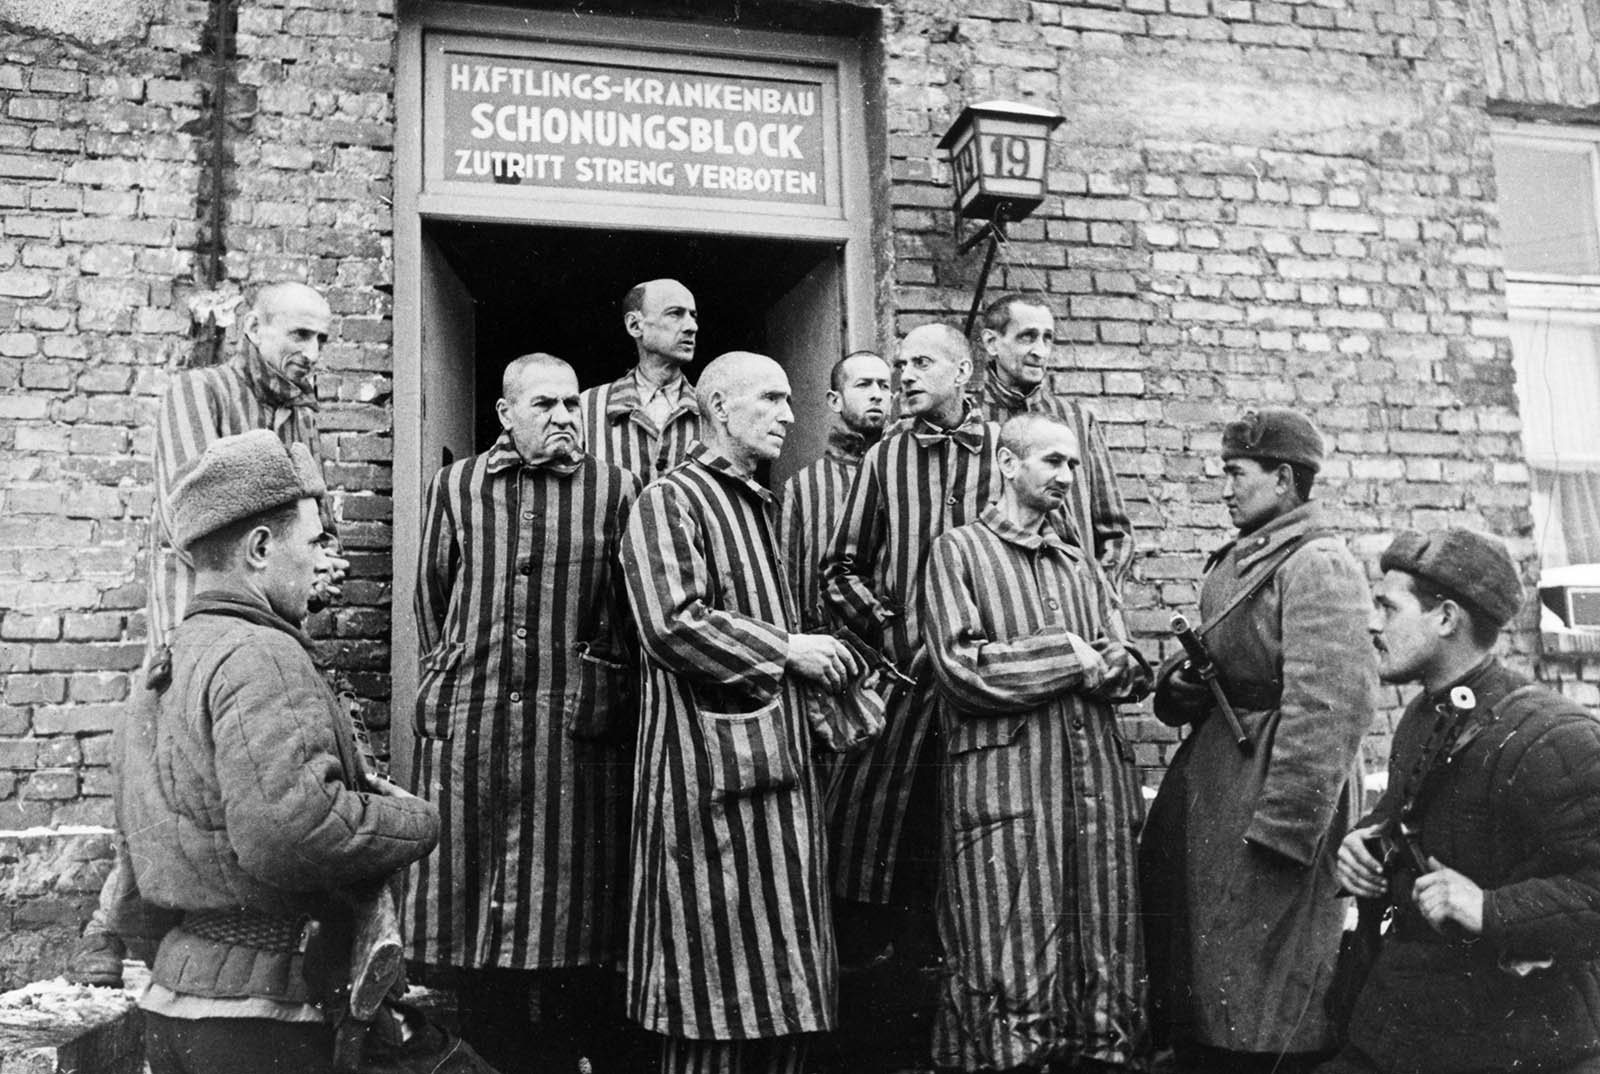 חיילי הצבא האדום בעת שחרור מחנה אושוויץ בינואר 1945 (גטי אימאג')